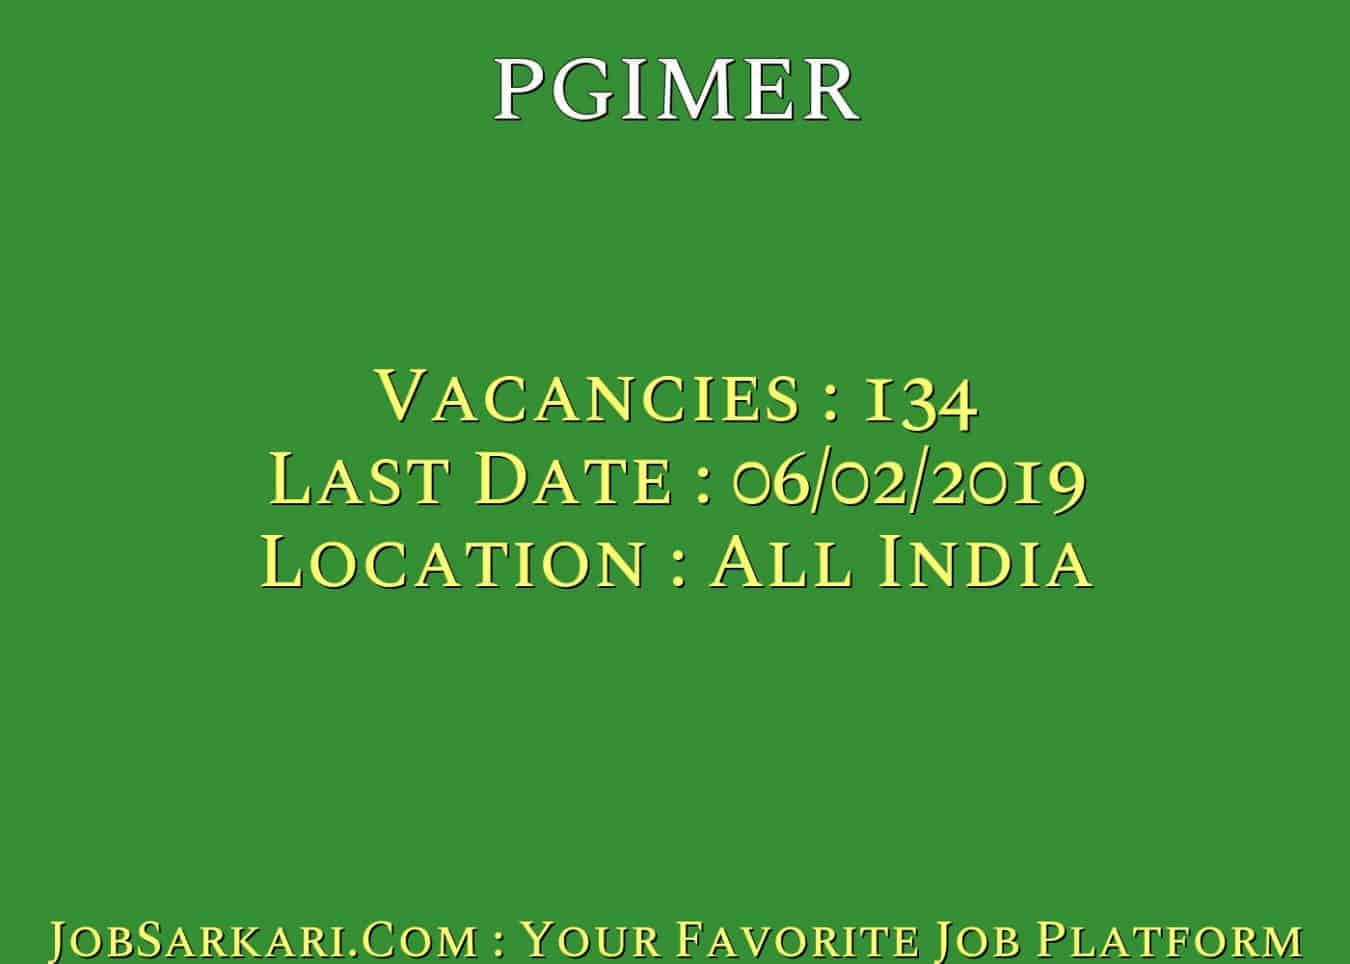 PGIMER Recruitment 2019 For Assistant Professor Govt Job